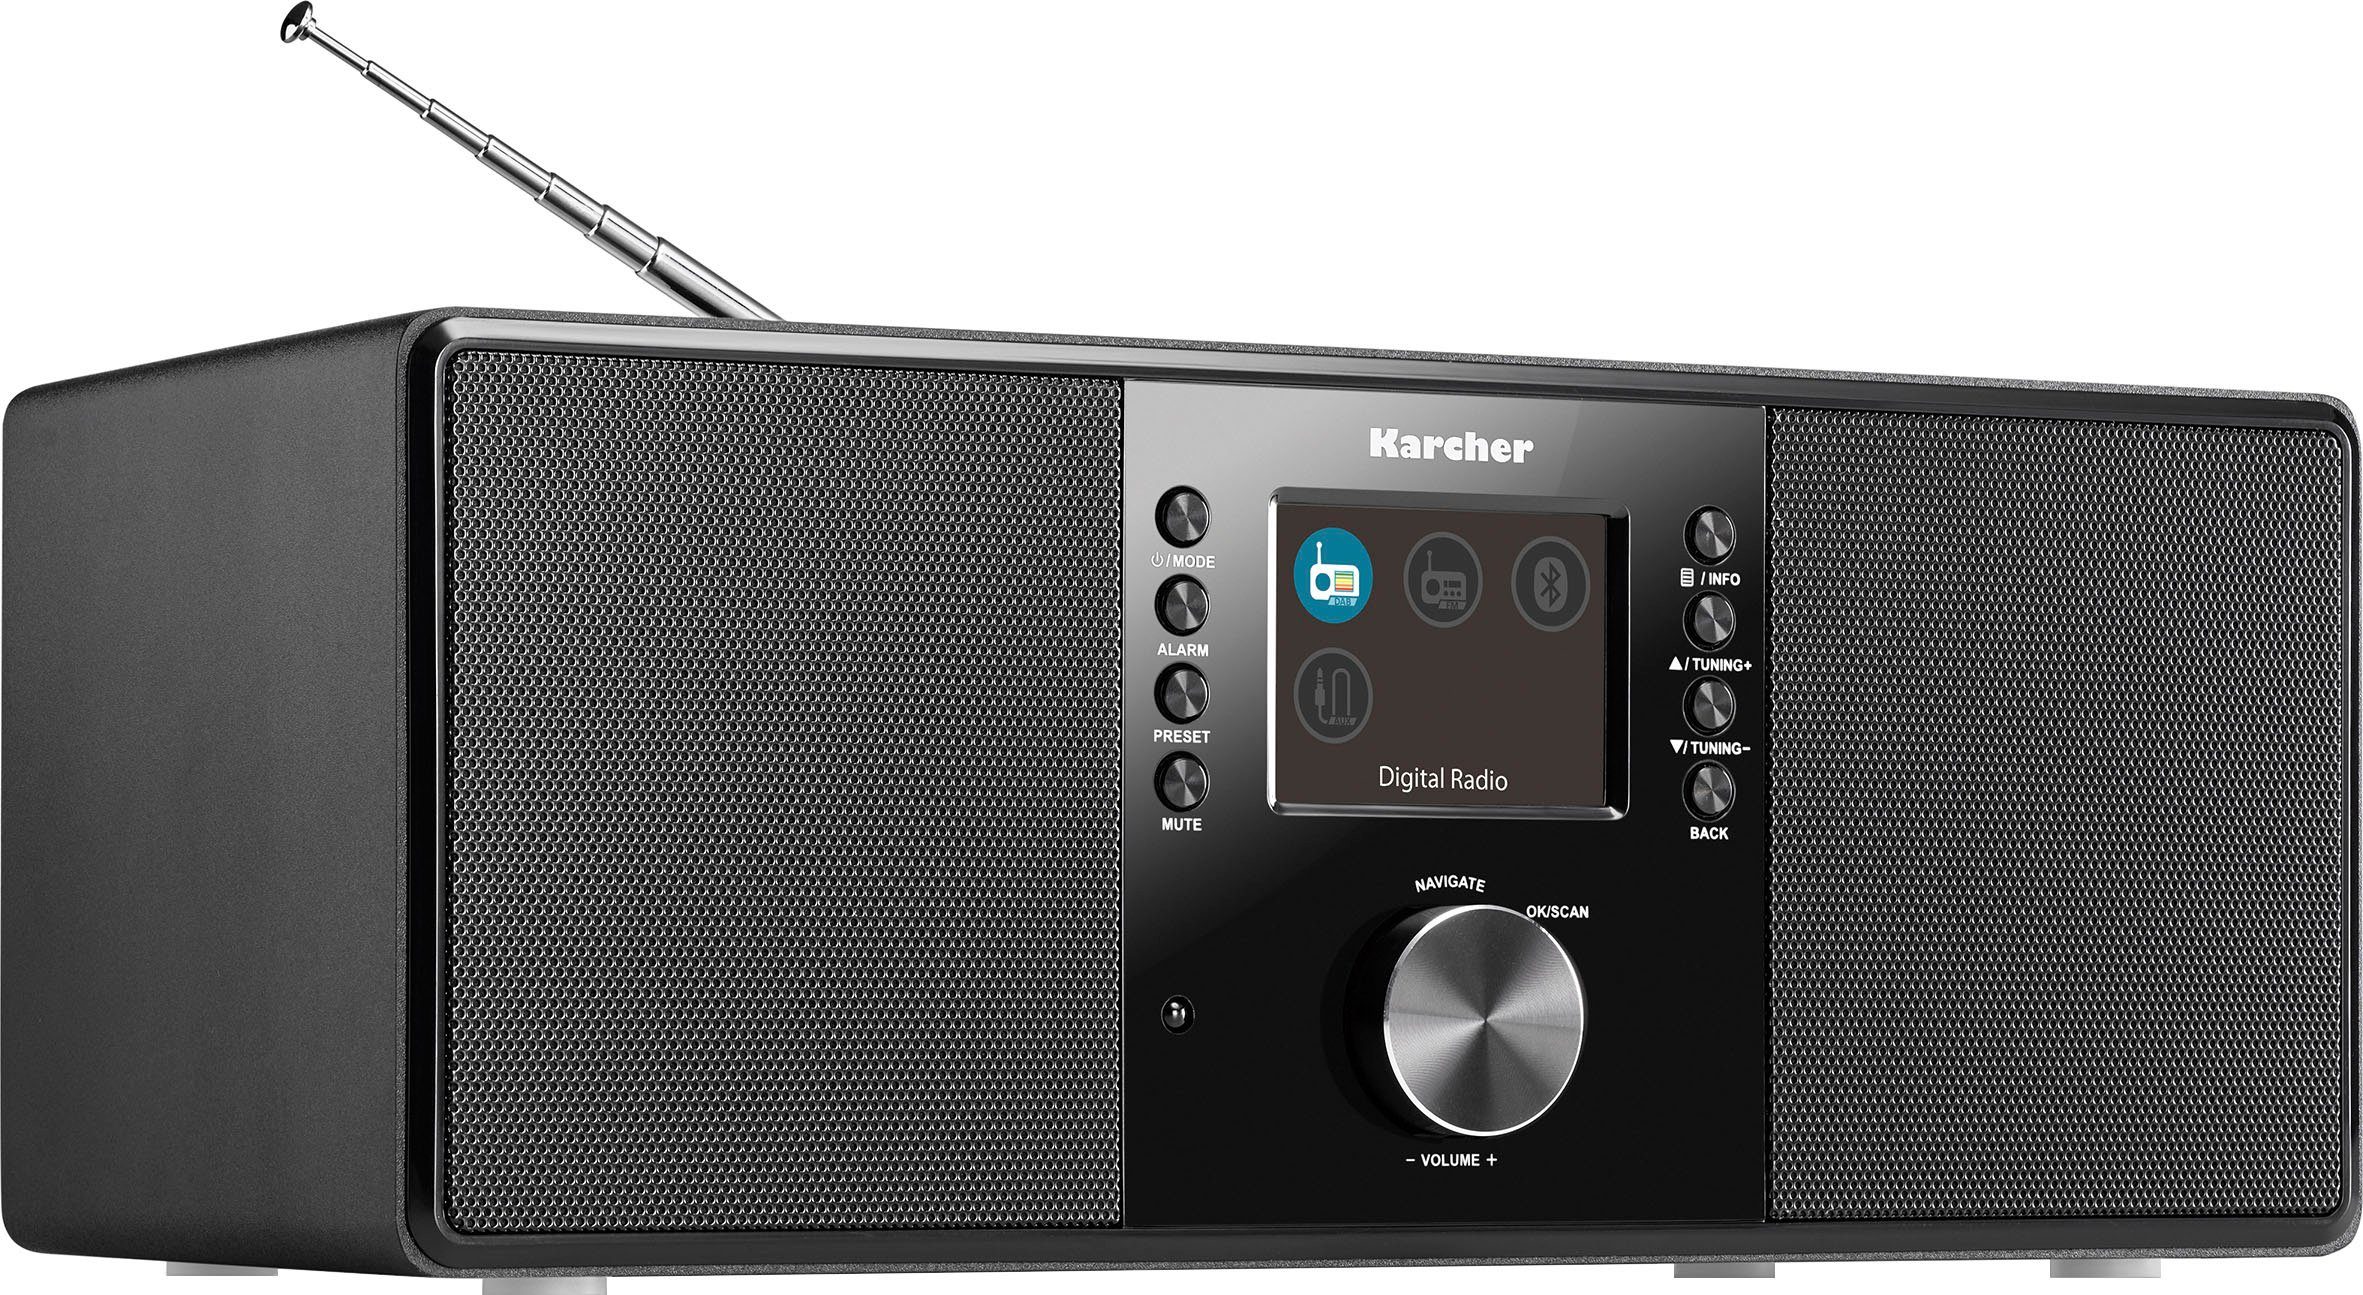 Karcher DAB 5000+ Digitalradio (DAB) (Digitalradio (DAB), FM-Tuner, UKW mit RDS, 10 W, Bluetooth, Sleep-Timer/Weckfunktion, Kopfhöreranschluss, Farbdisplay)